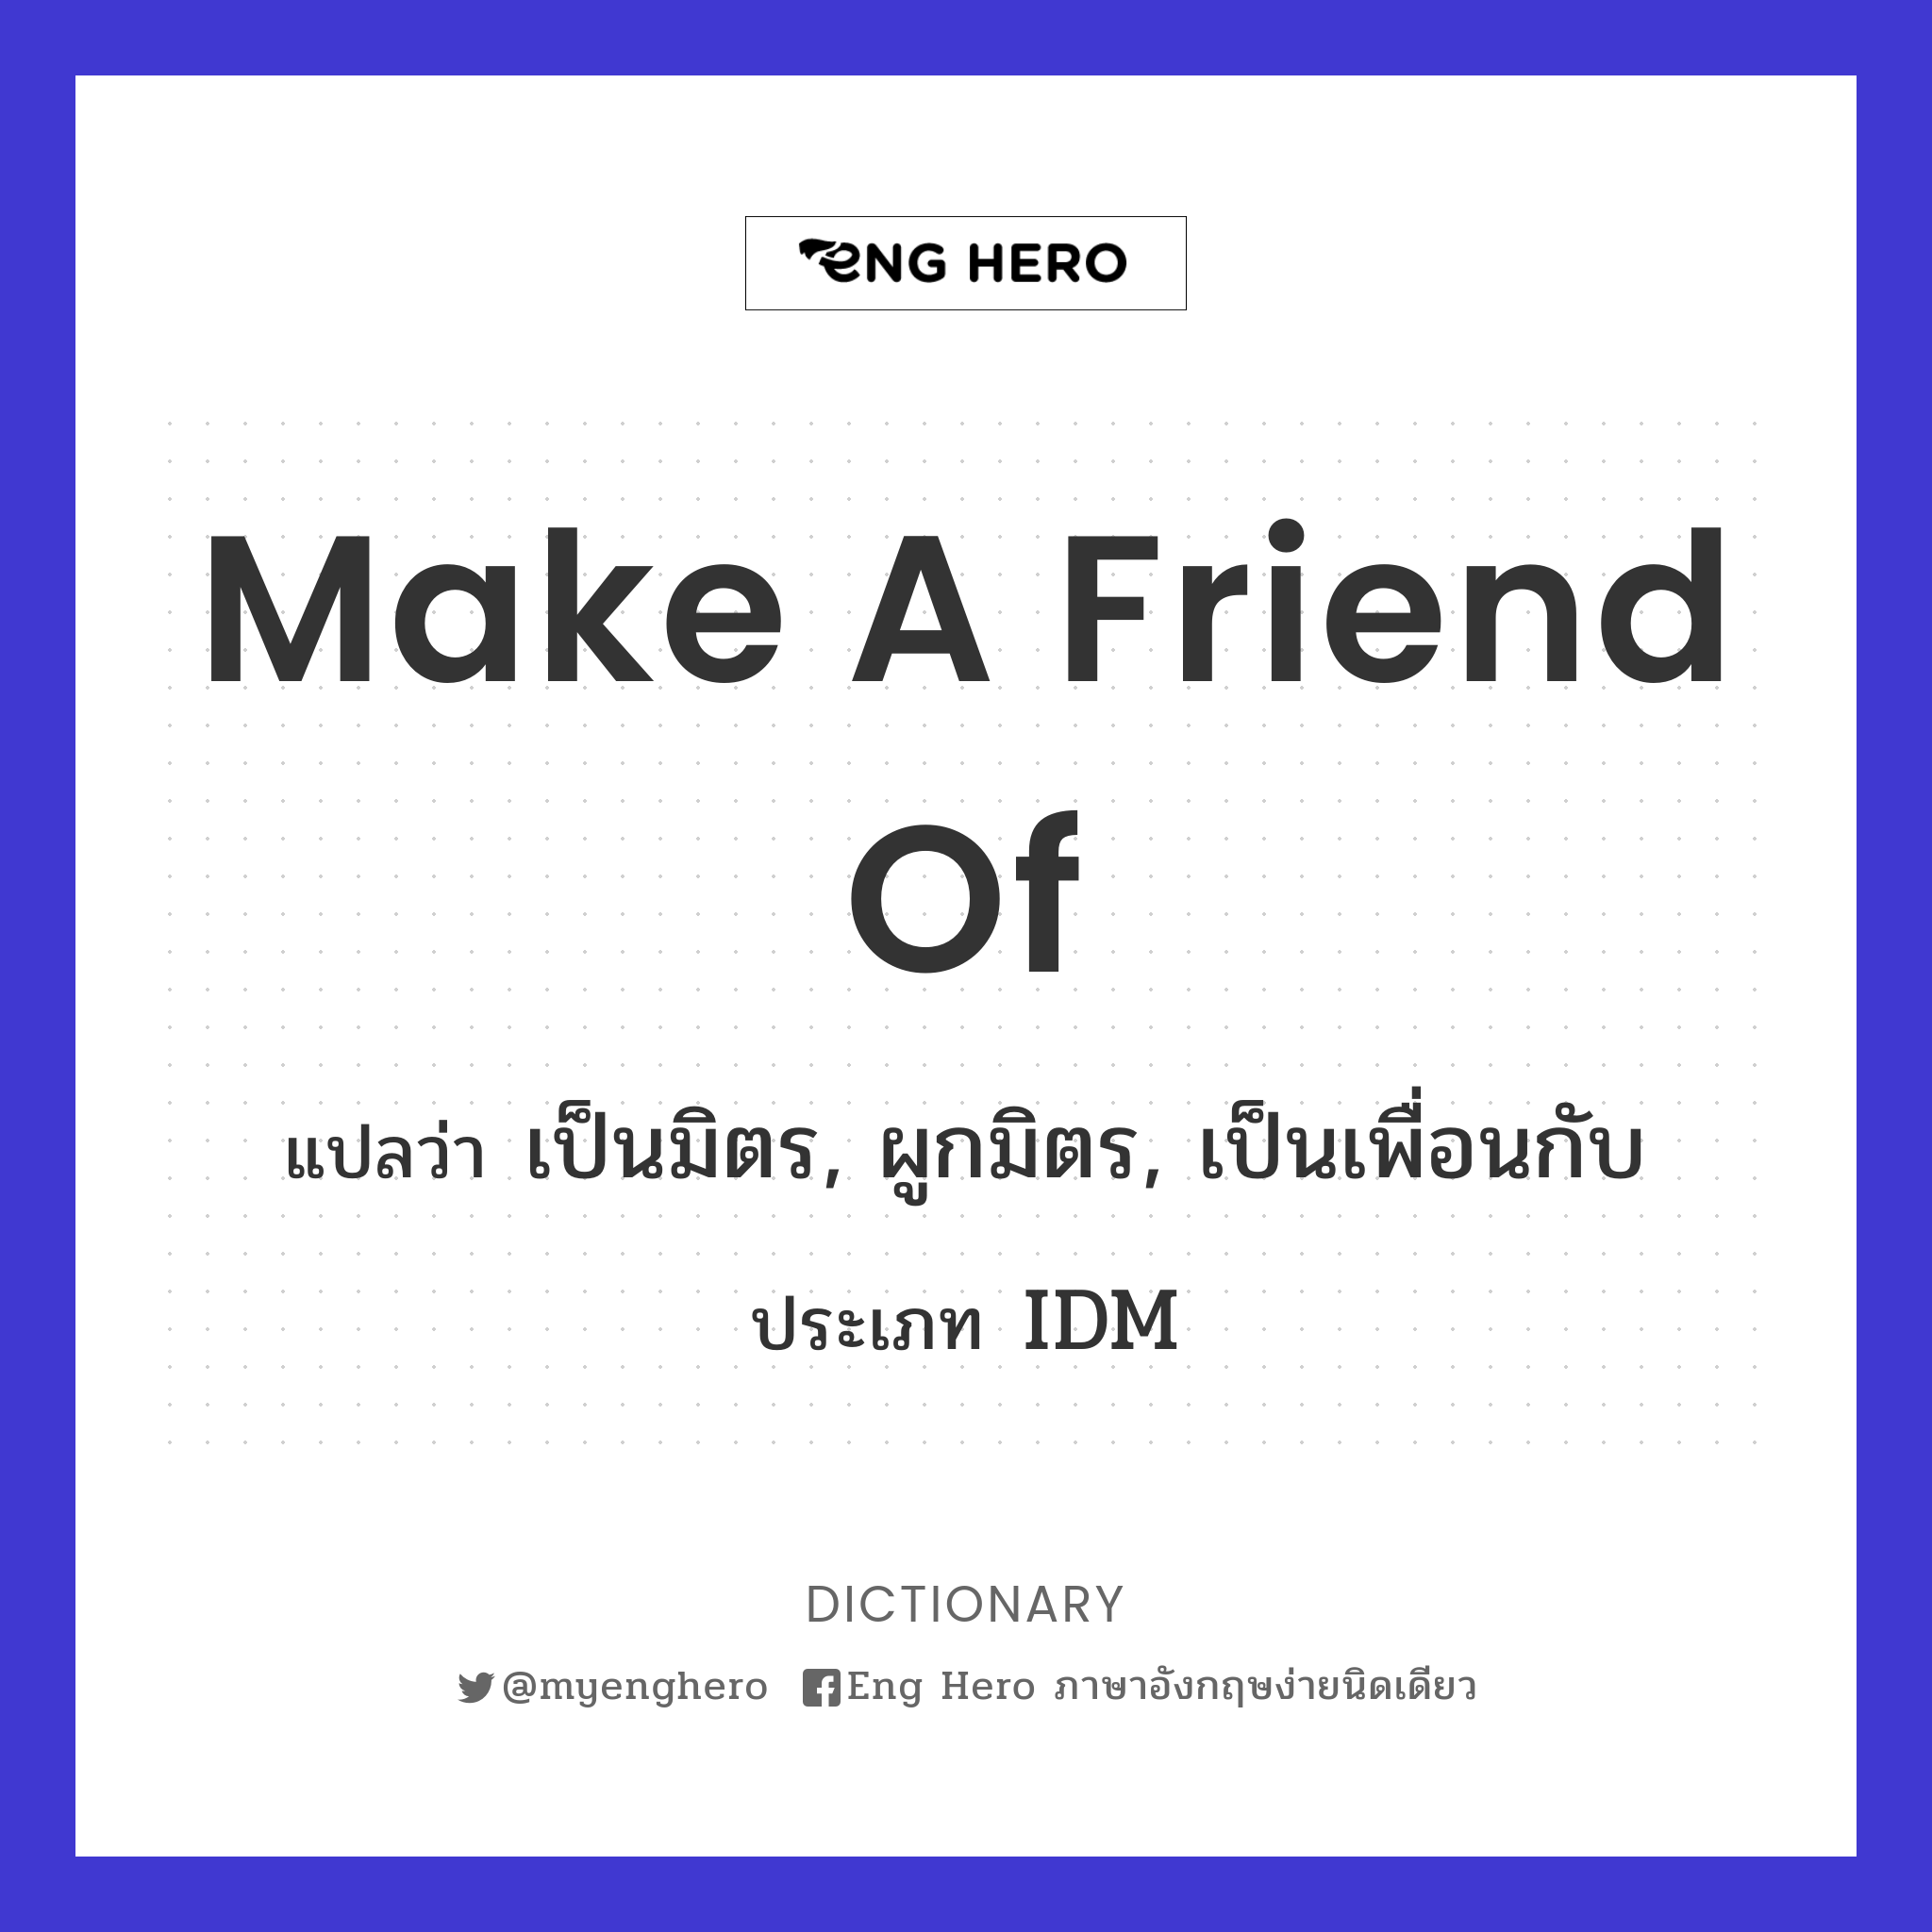 Make A Friend Of แปลว่า เป็นมิตร, ผูกมิตร, เป็นเพื่อนกับ | Eng Hero เรียน ภาษาอังกฤษ ออนไลน์ ฟรี